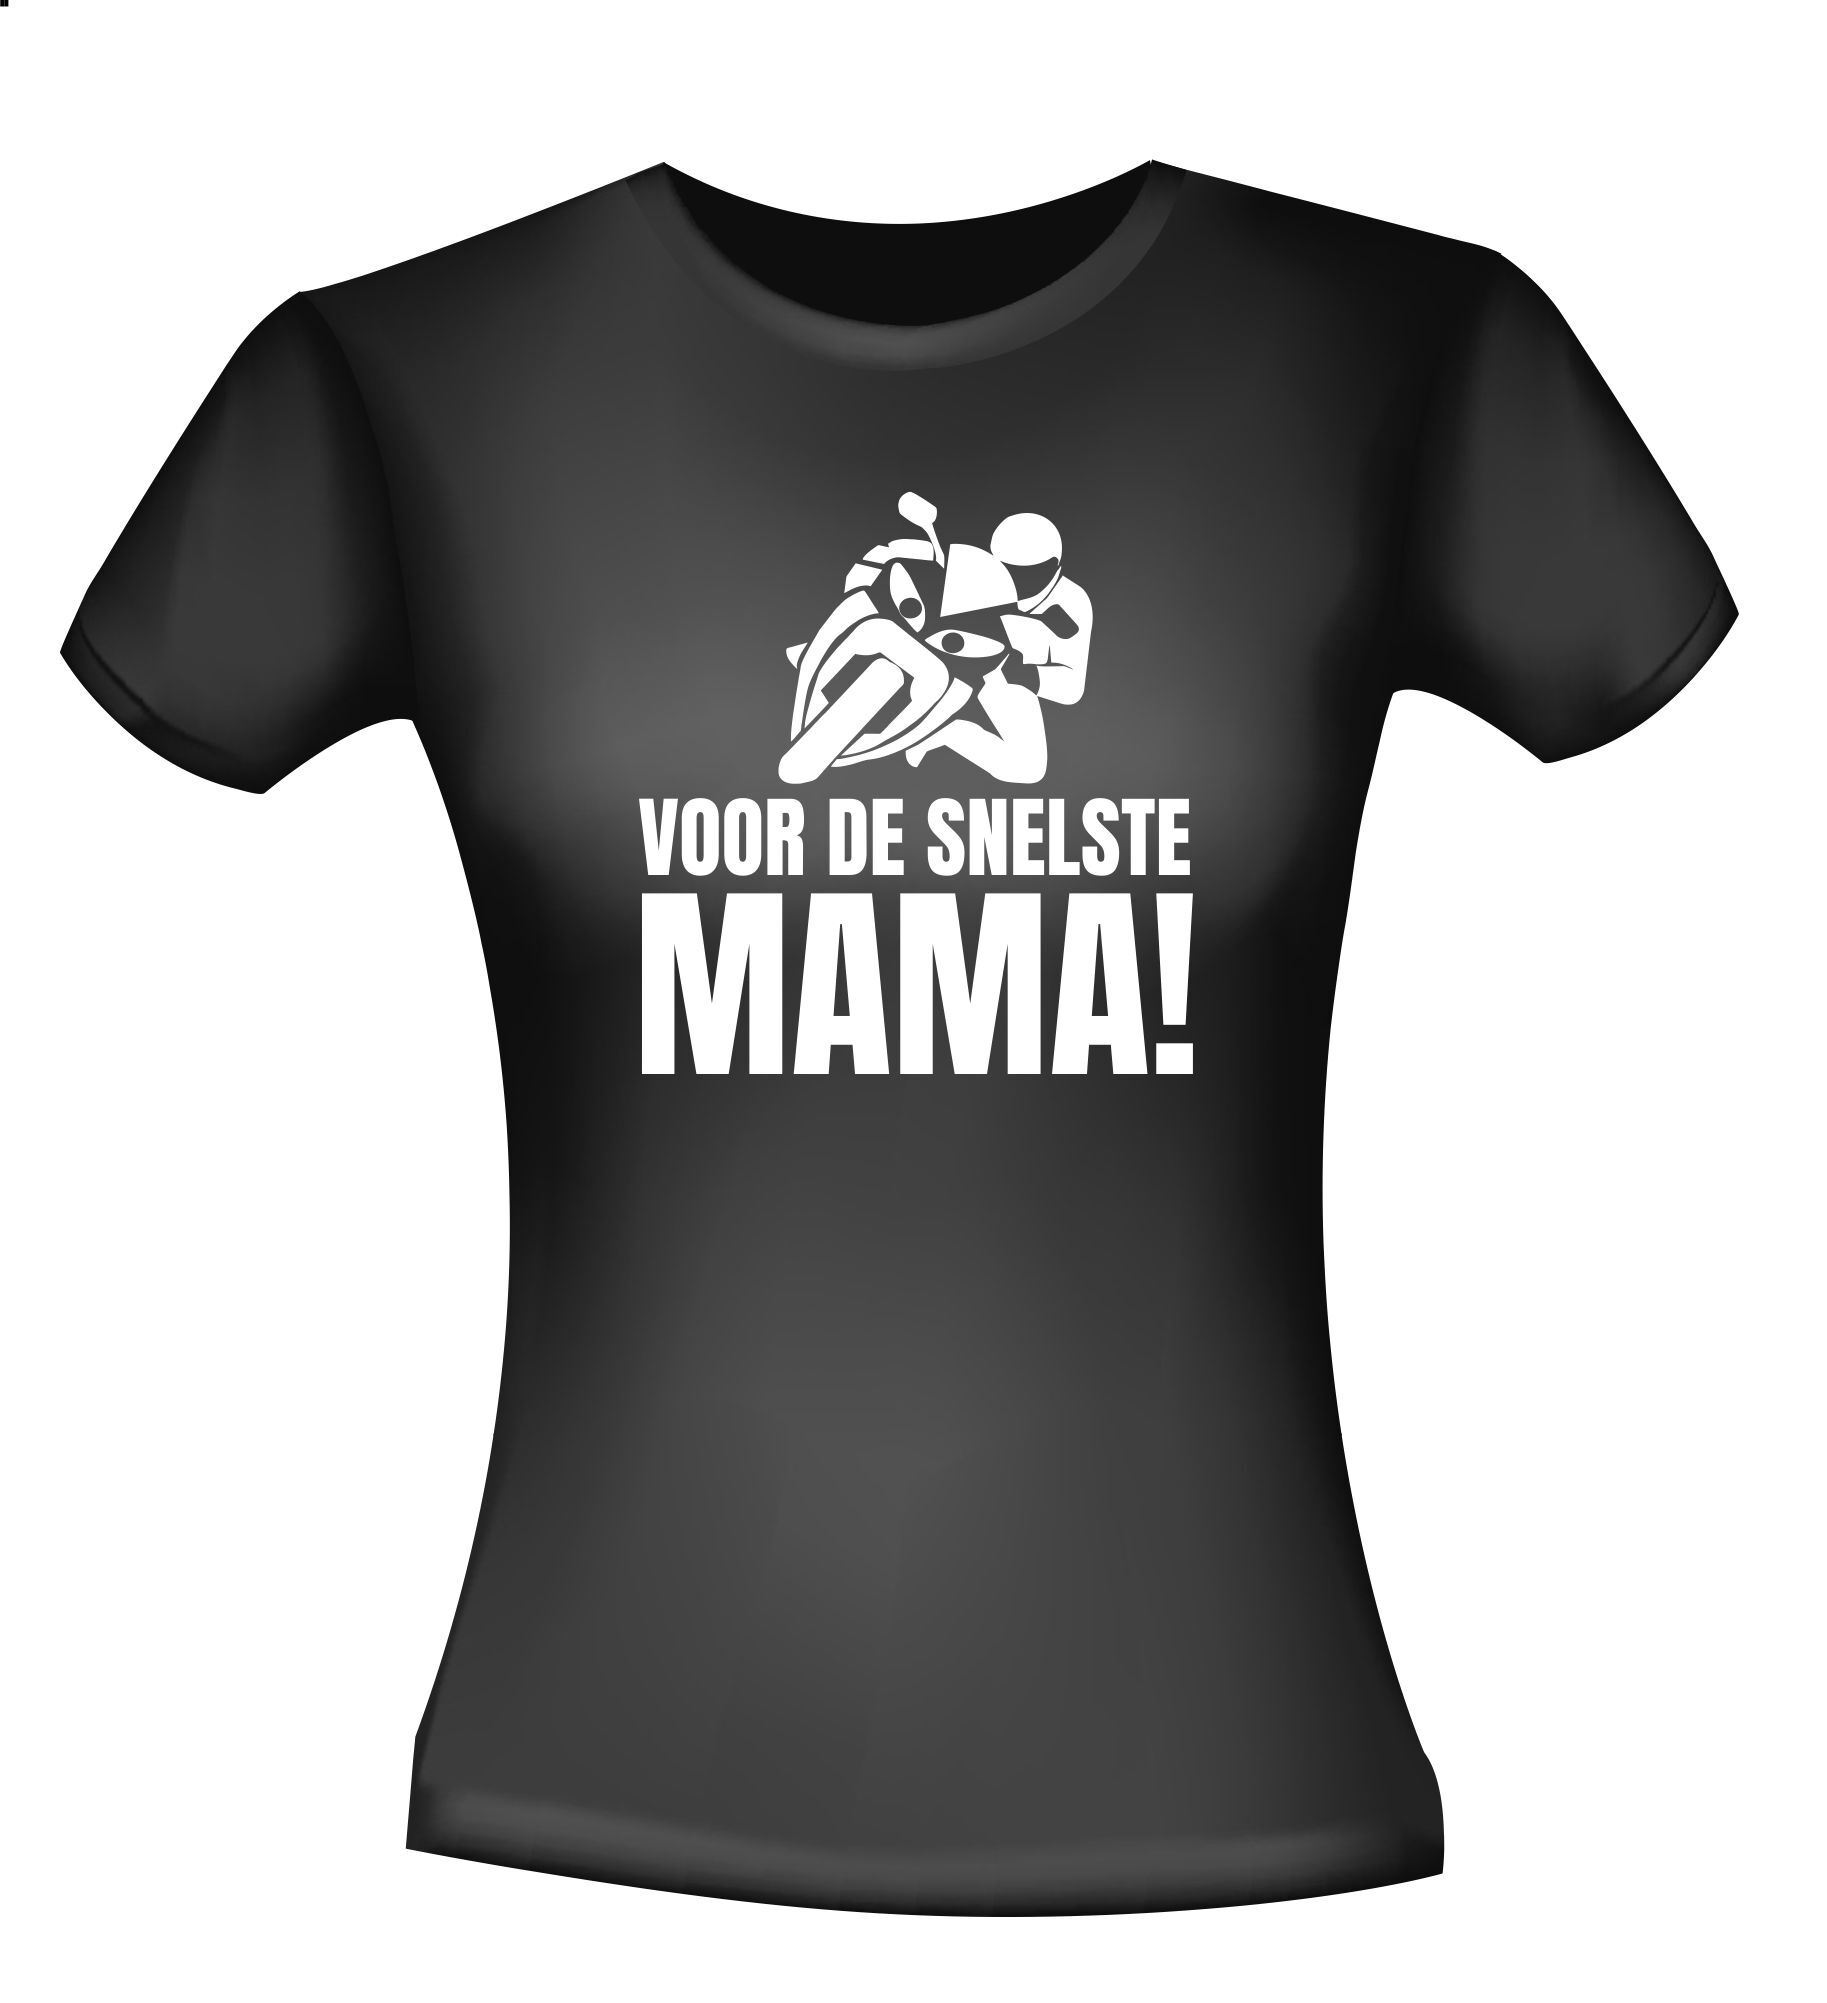 T-shirt voor de snelste mama die motorrij